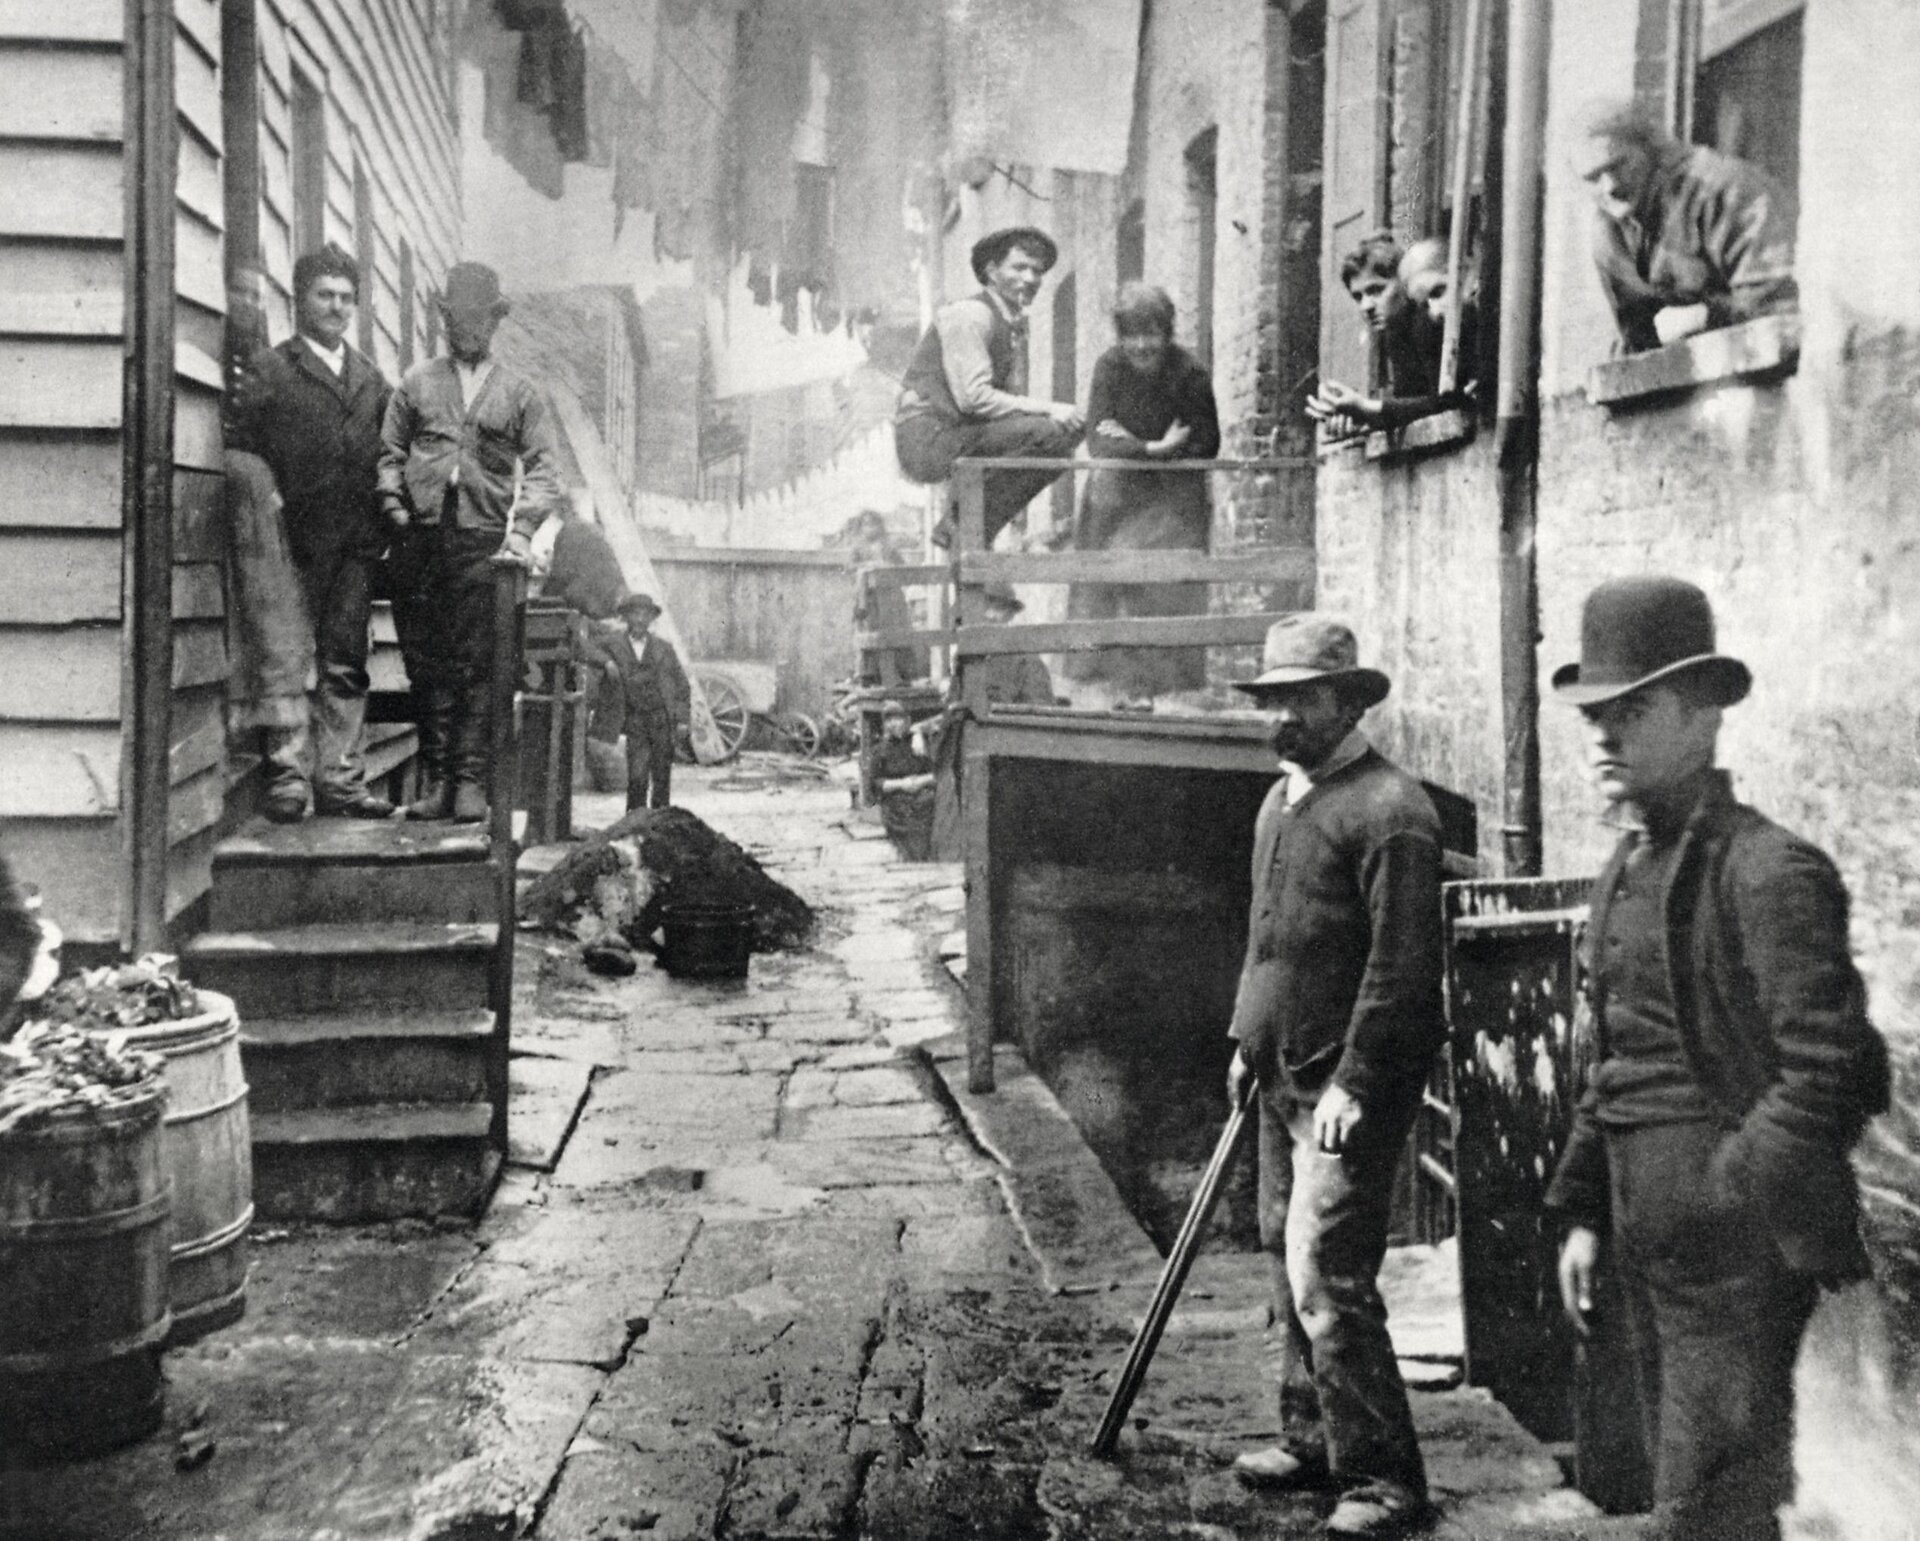 Zdjęcie przedstawia slumsy na Manhattanie. W ciasnej uliczce stoją mężczyźni w kapeluszach. Po obu stronach uliczki znajdują się podesty ze schodami. Również na nich stoją mężczyźni. W budynku z prawej strony z okien wychylają się kolejne osoby.